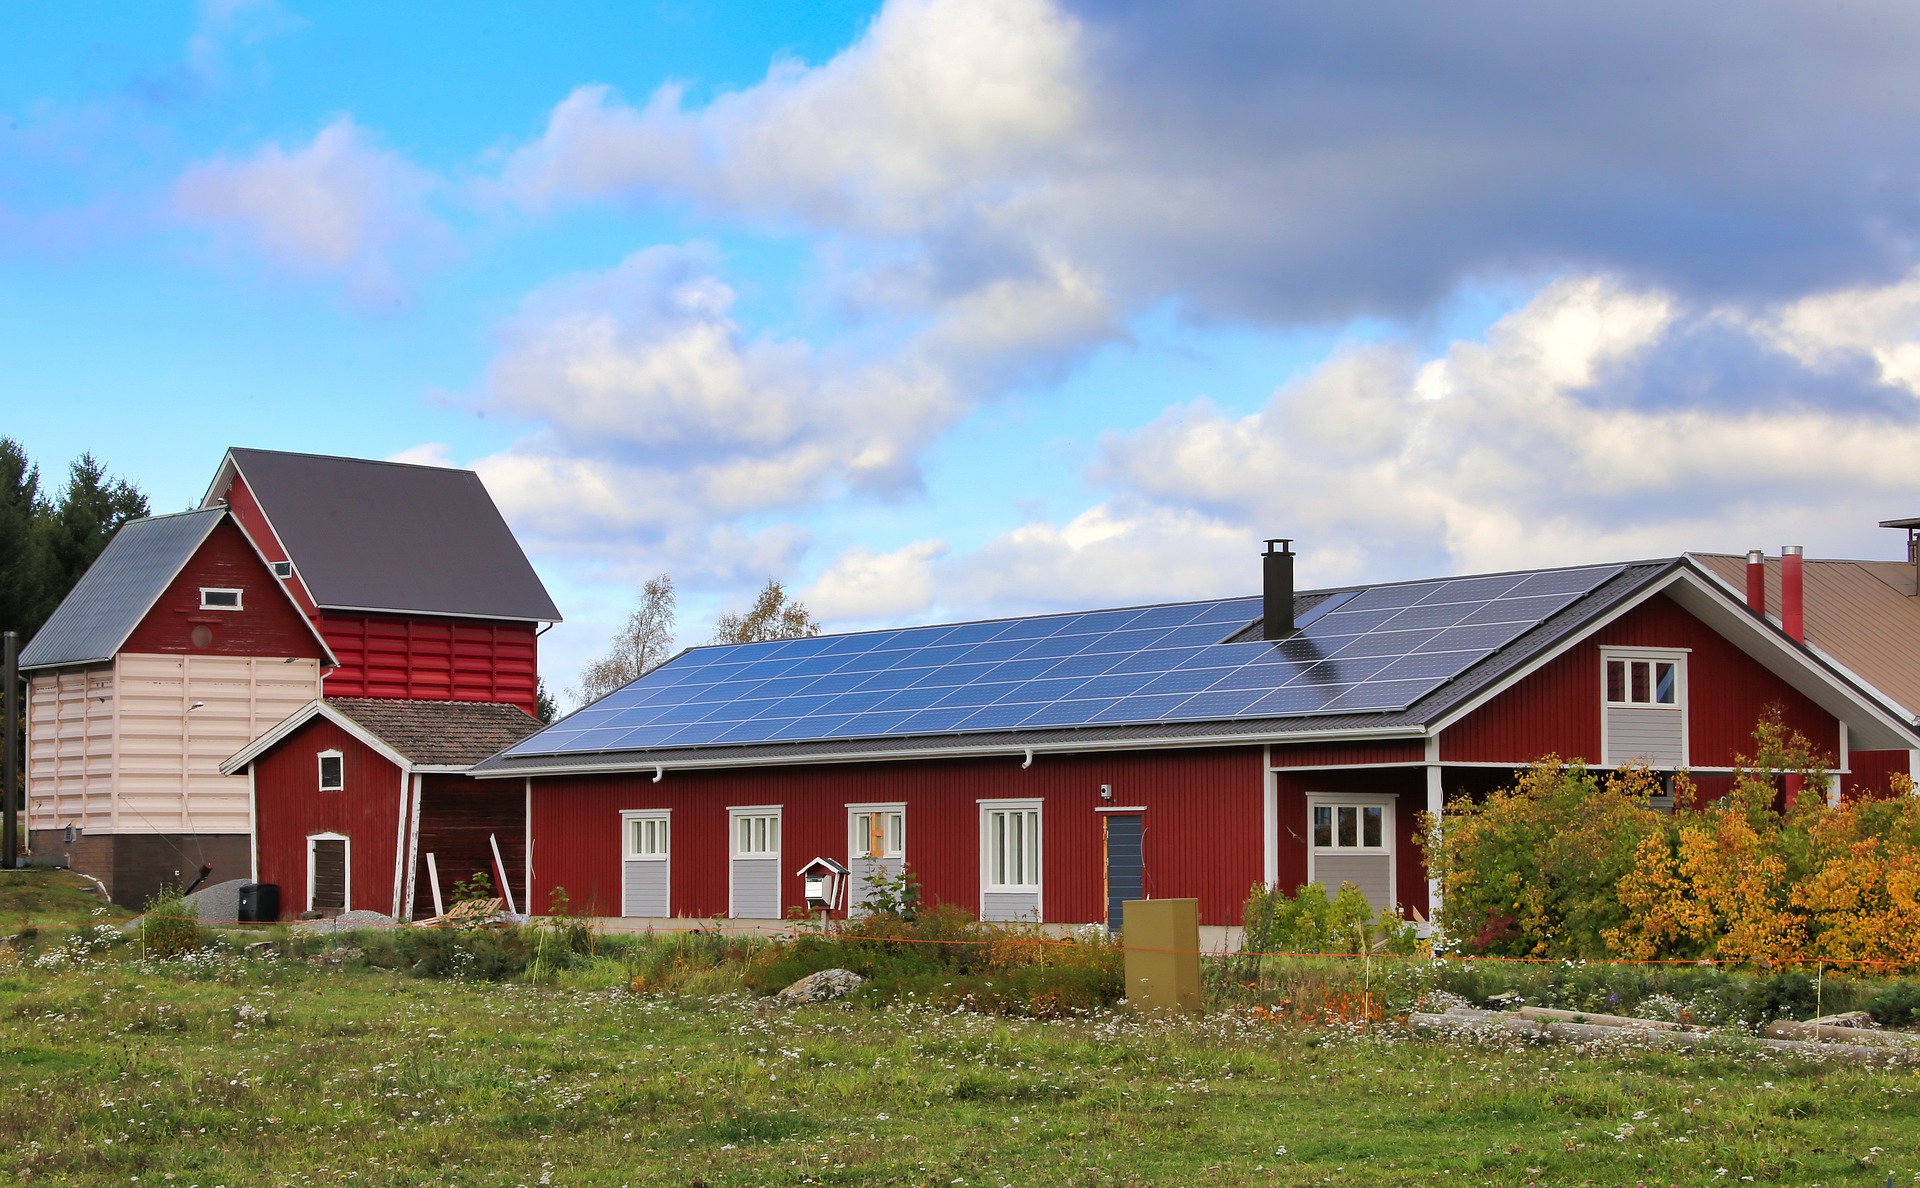 Farm's barn house with solar panels